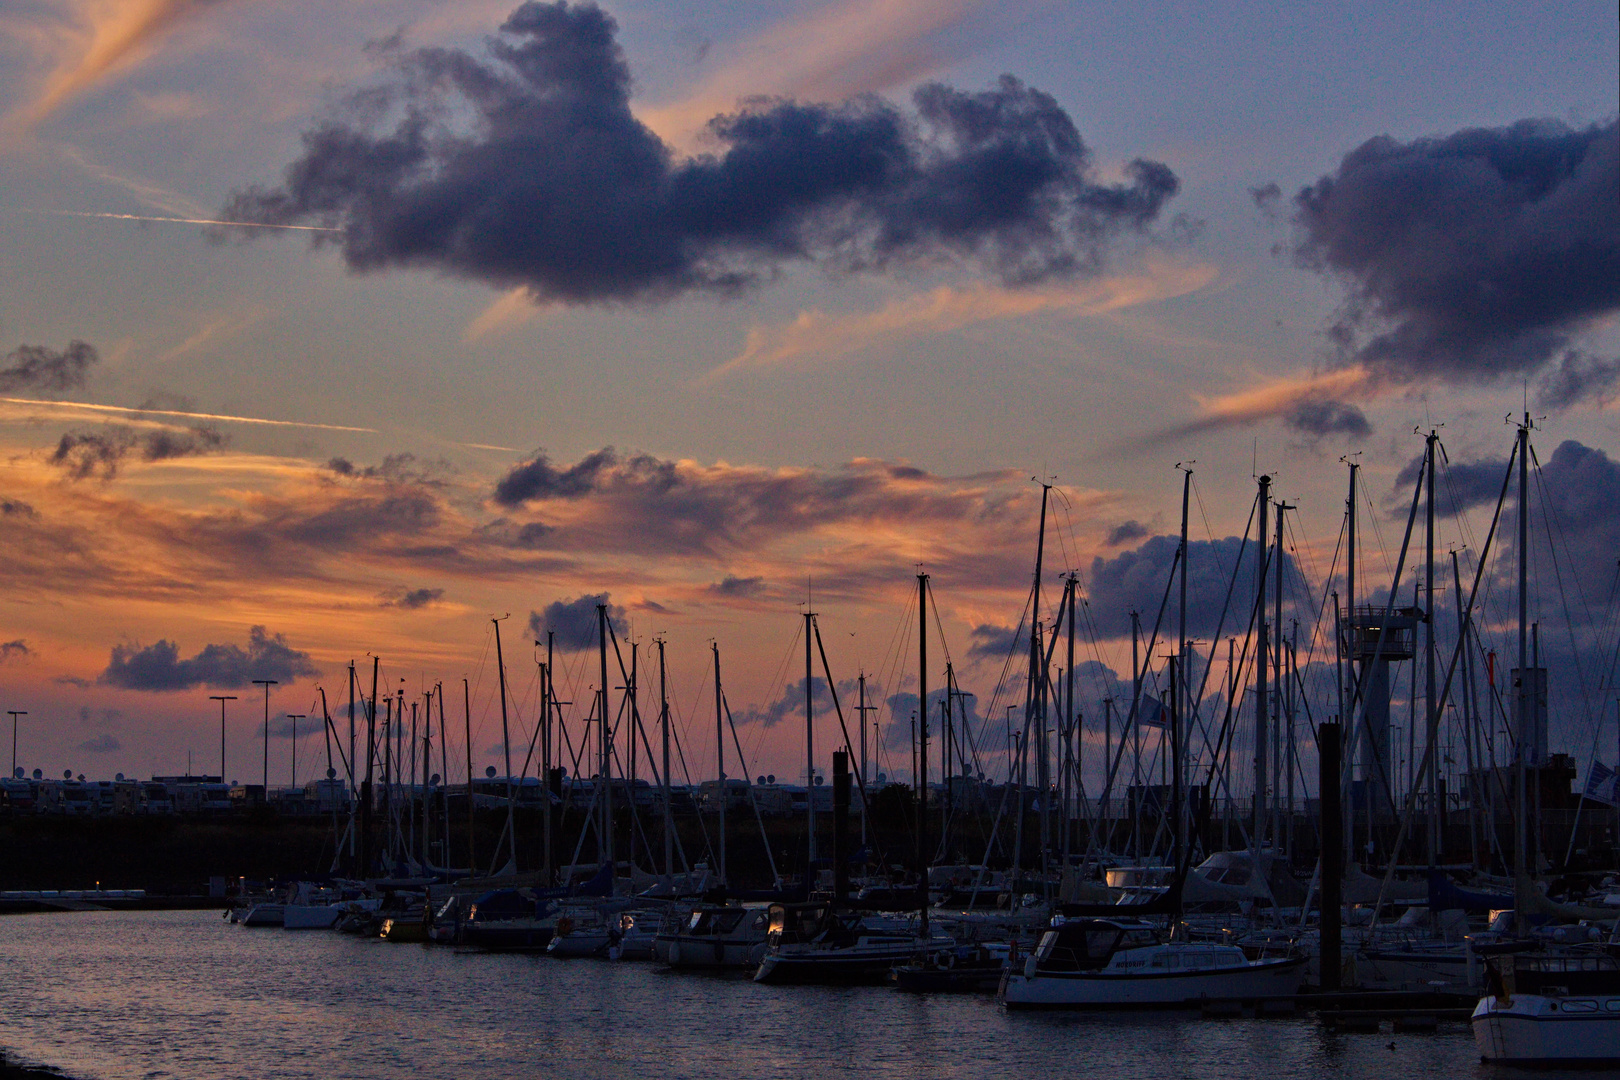 Sonnenuntergang im Seglerhafen von Cuxhaven